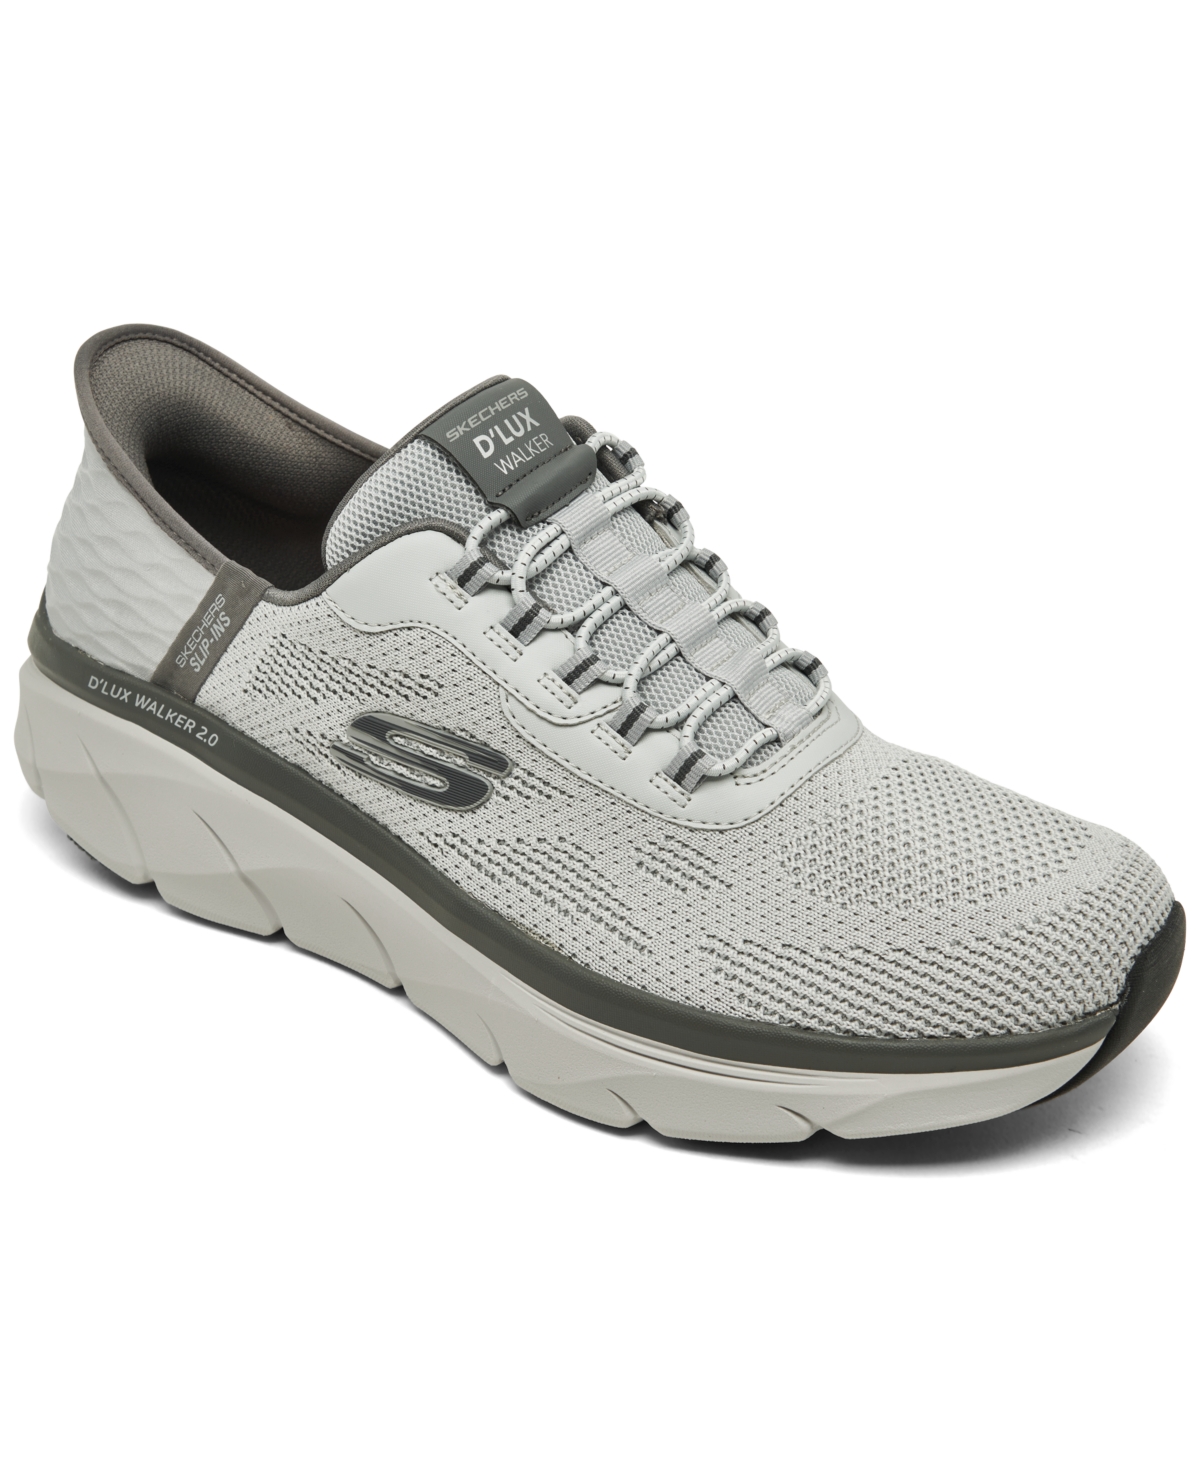 Men's Slip-Ins Rf D'Lux Walker 2.0 - Resonate Walking Sneakers from Finish Line - Gycc-gray/